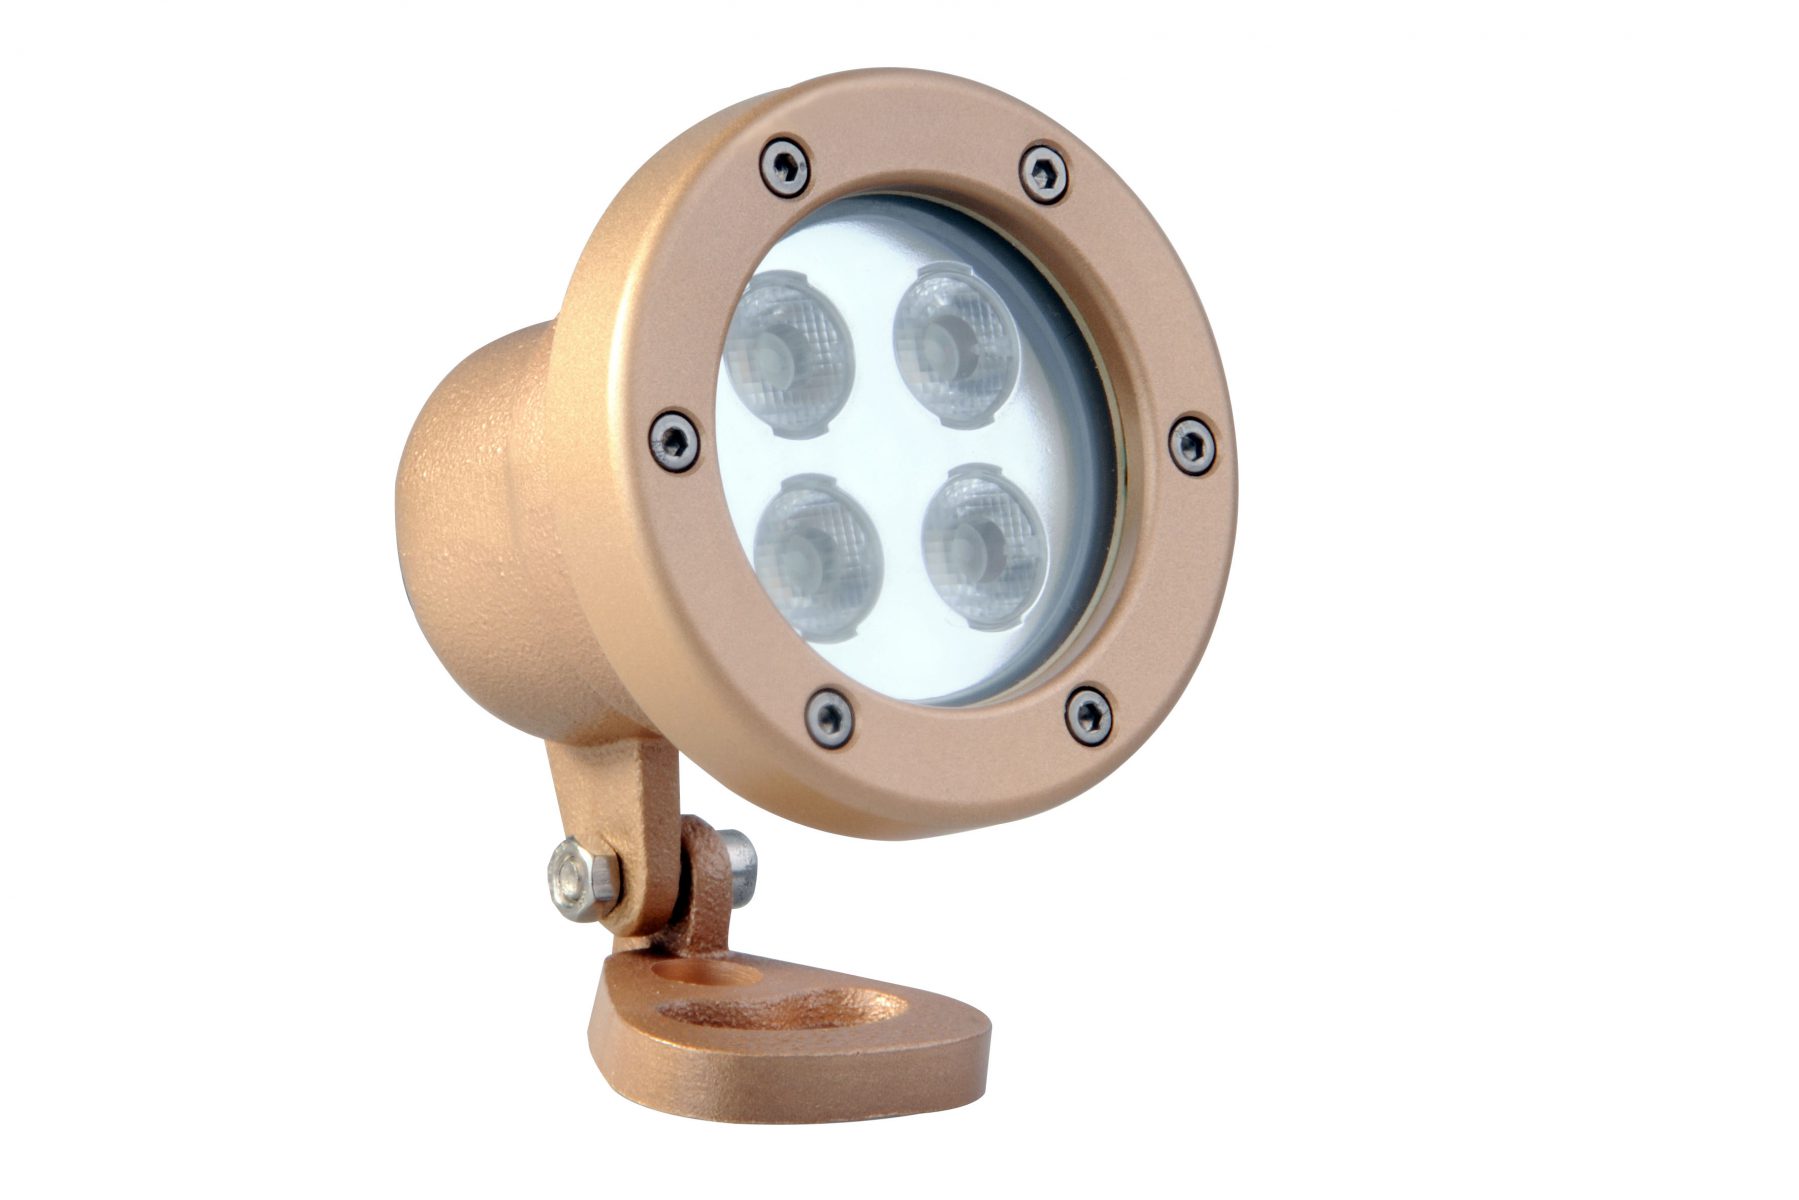 Прожектор Power-LED для подсветки фонтанов, 4 х 3 Вт, RGB